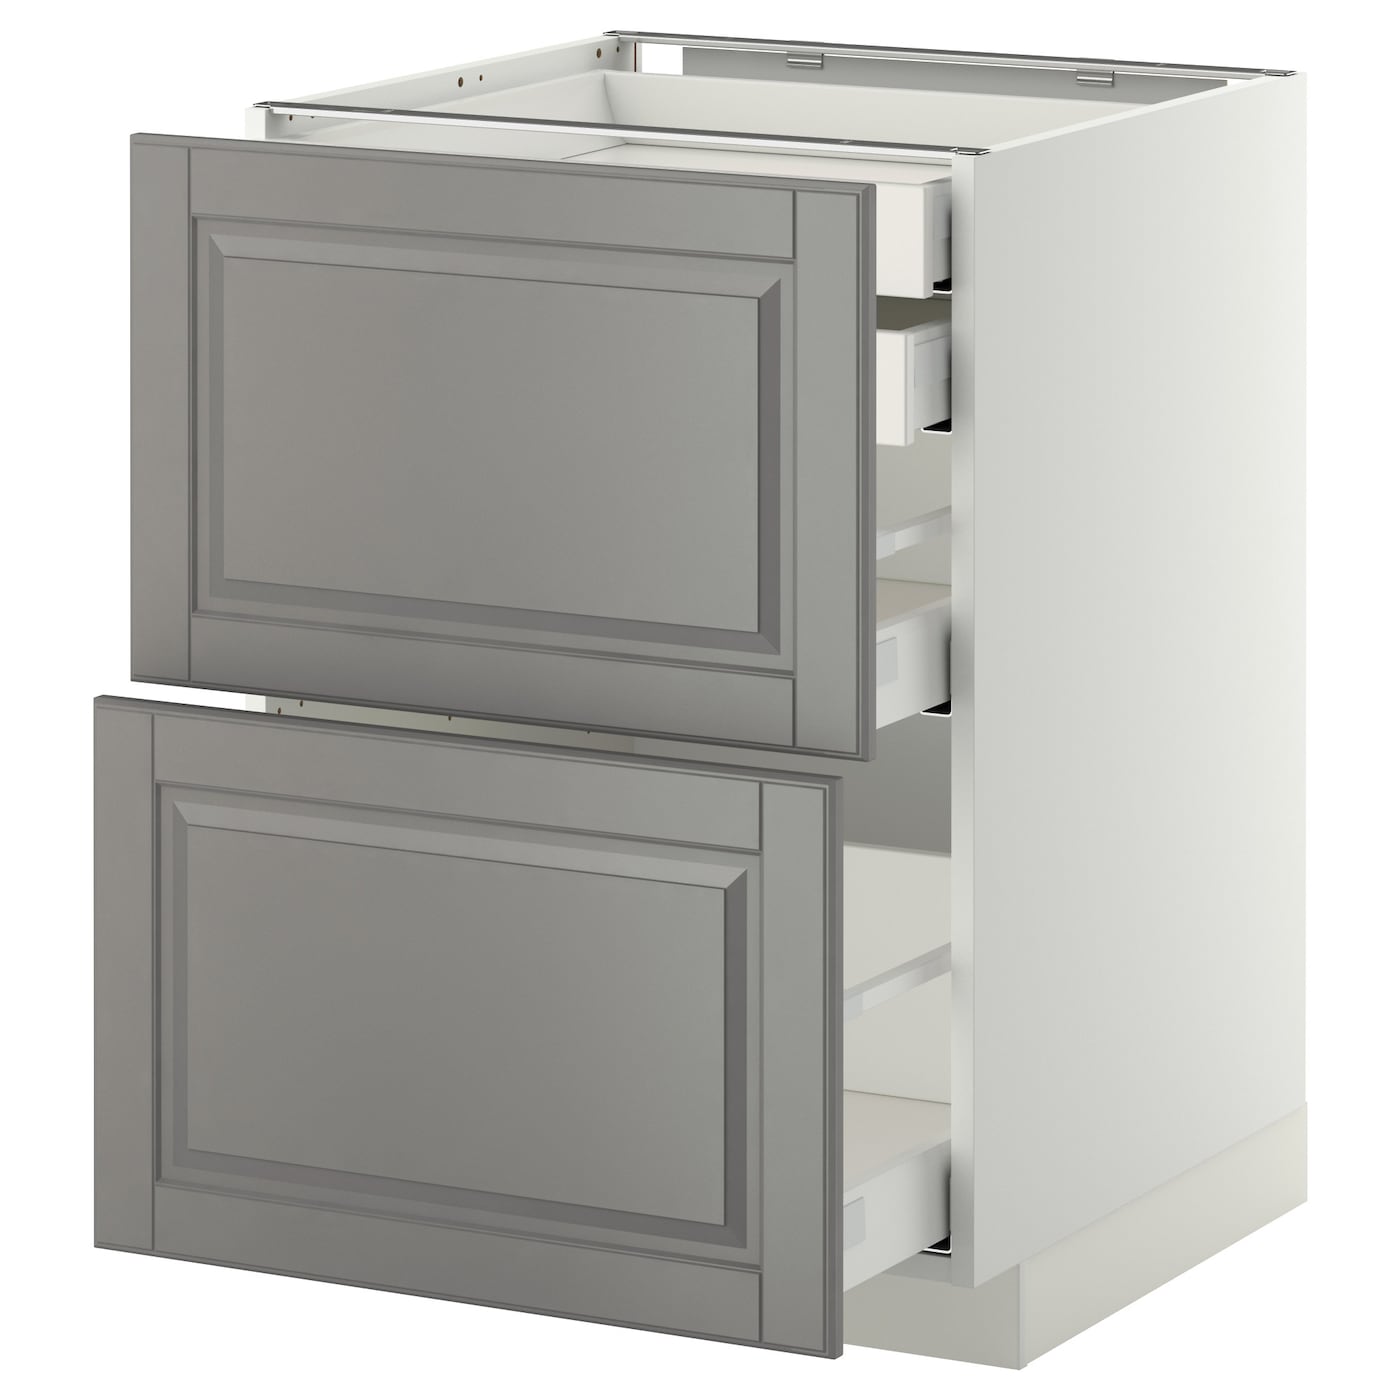 Напольный кухонный шкаф  - IKEA METOD MAXIMERA, 88x61,9x60см, белый/серый, МЕТОД МАКСИМЕРА ИКЕА